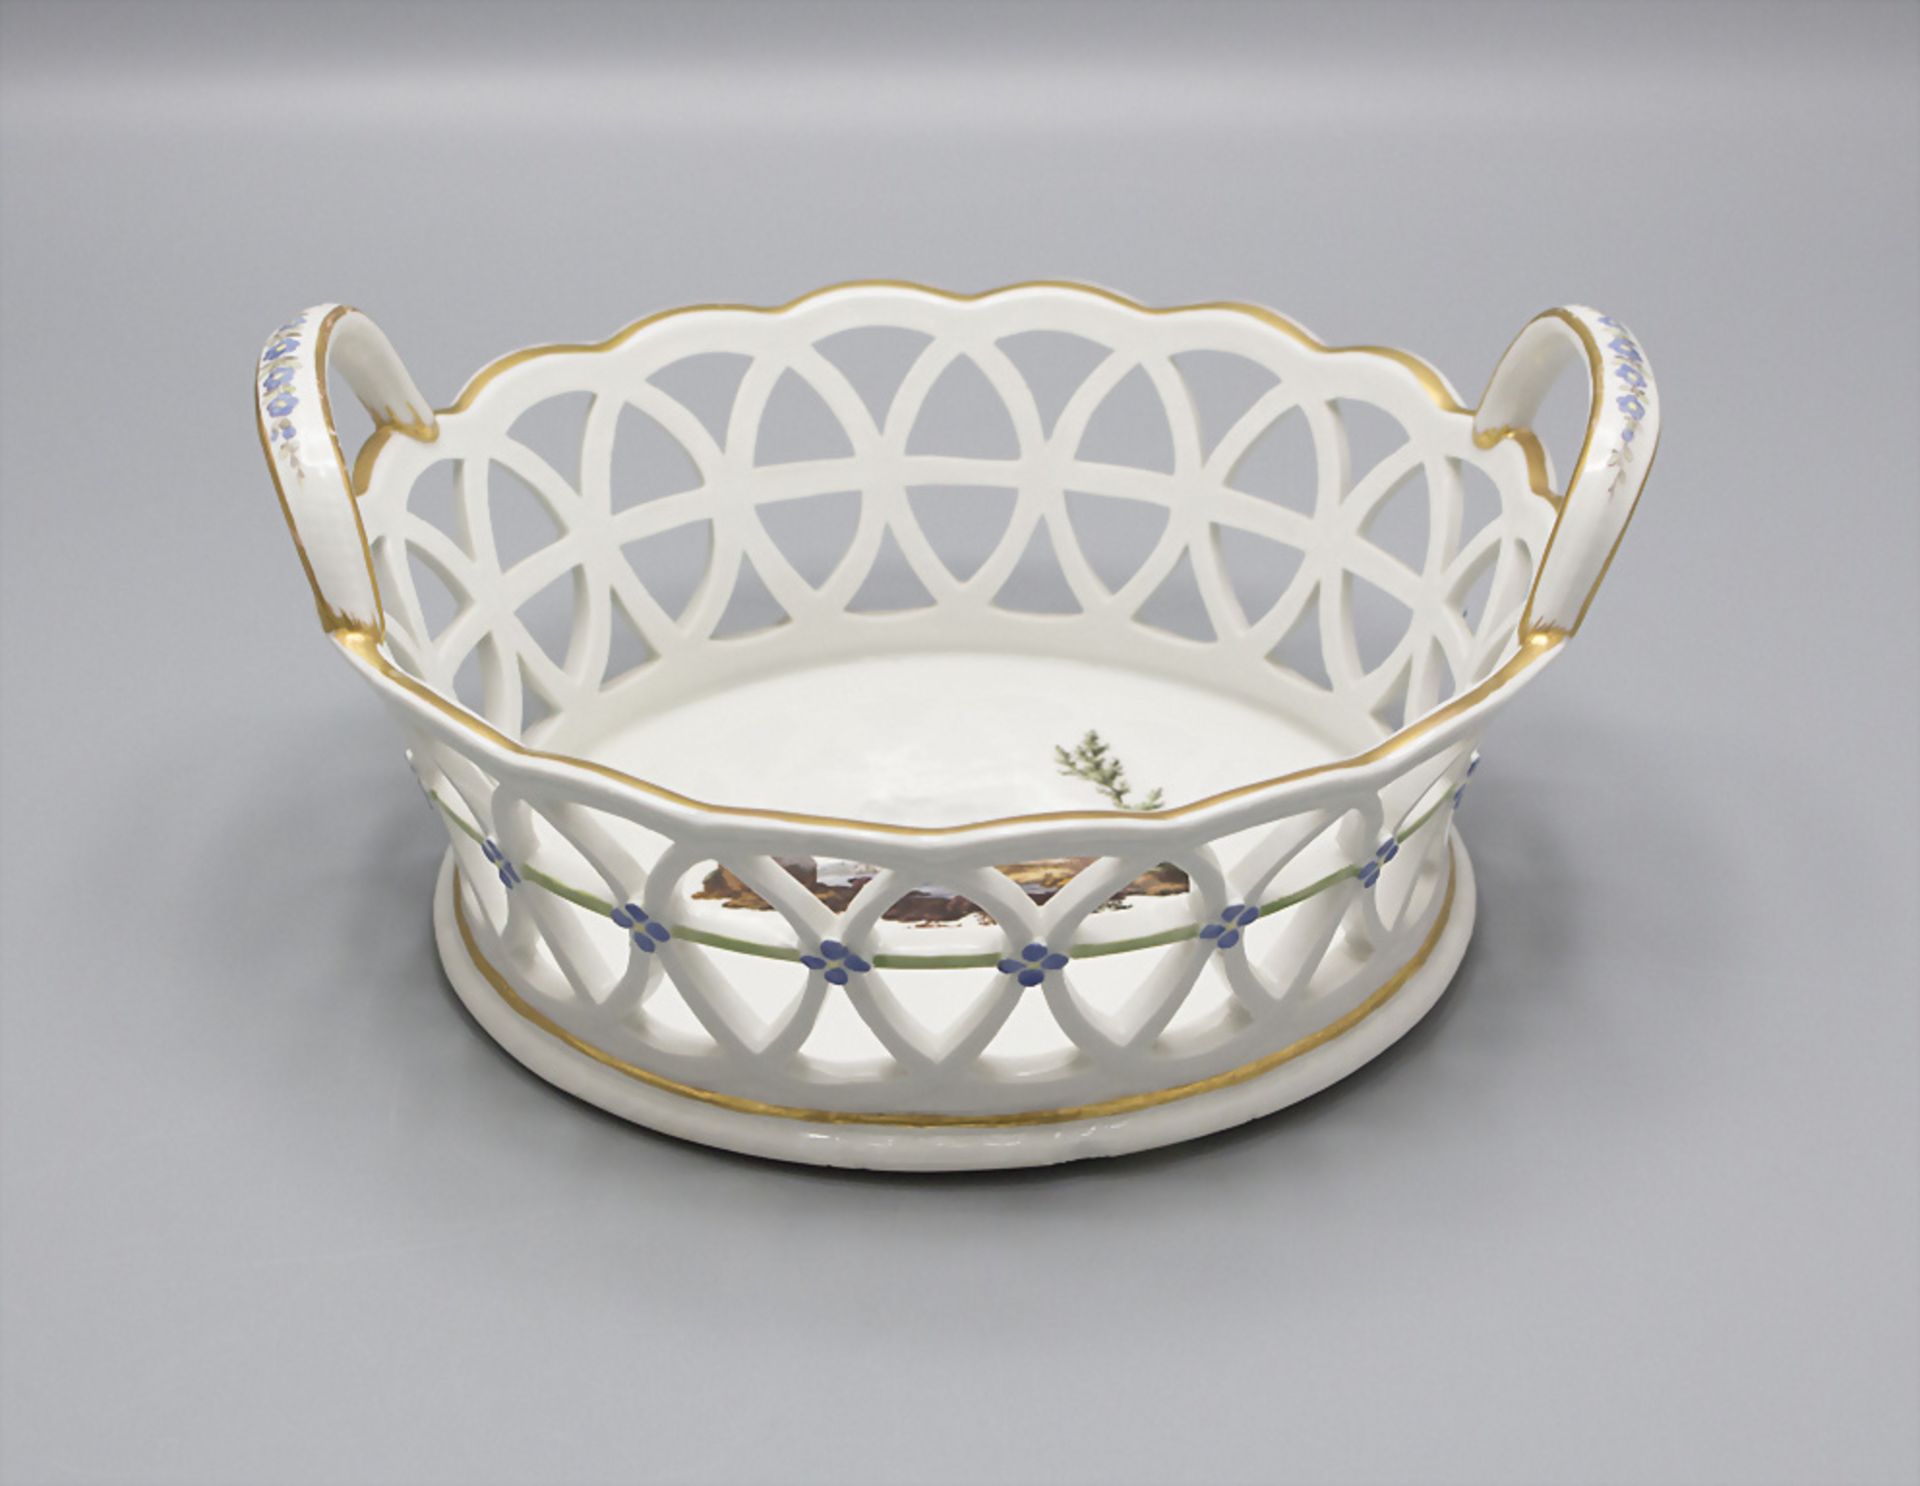 Porzellankorb / A porcelain basket, Fürstenberg, 18. Jh. - Image 2 of 4